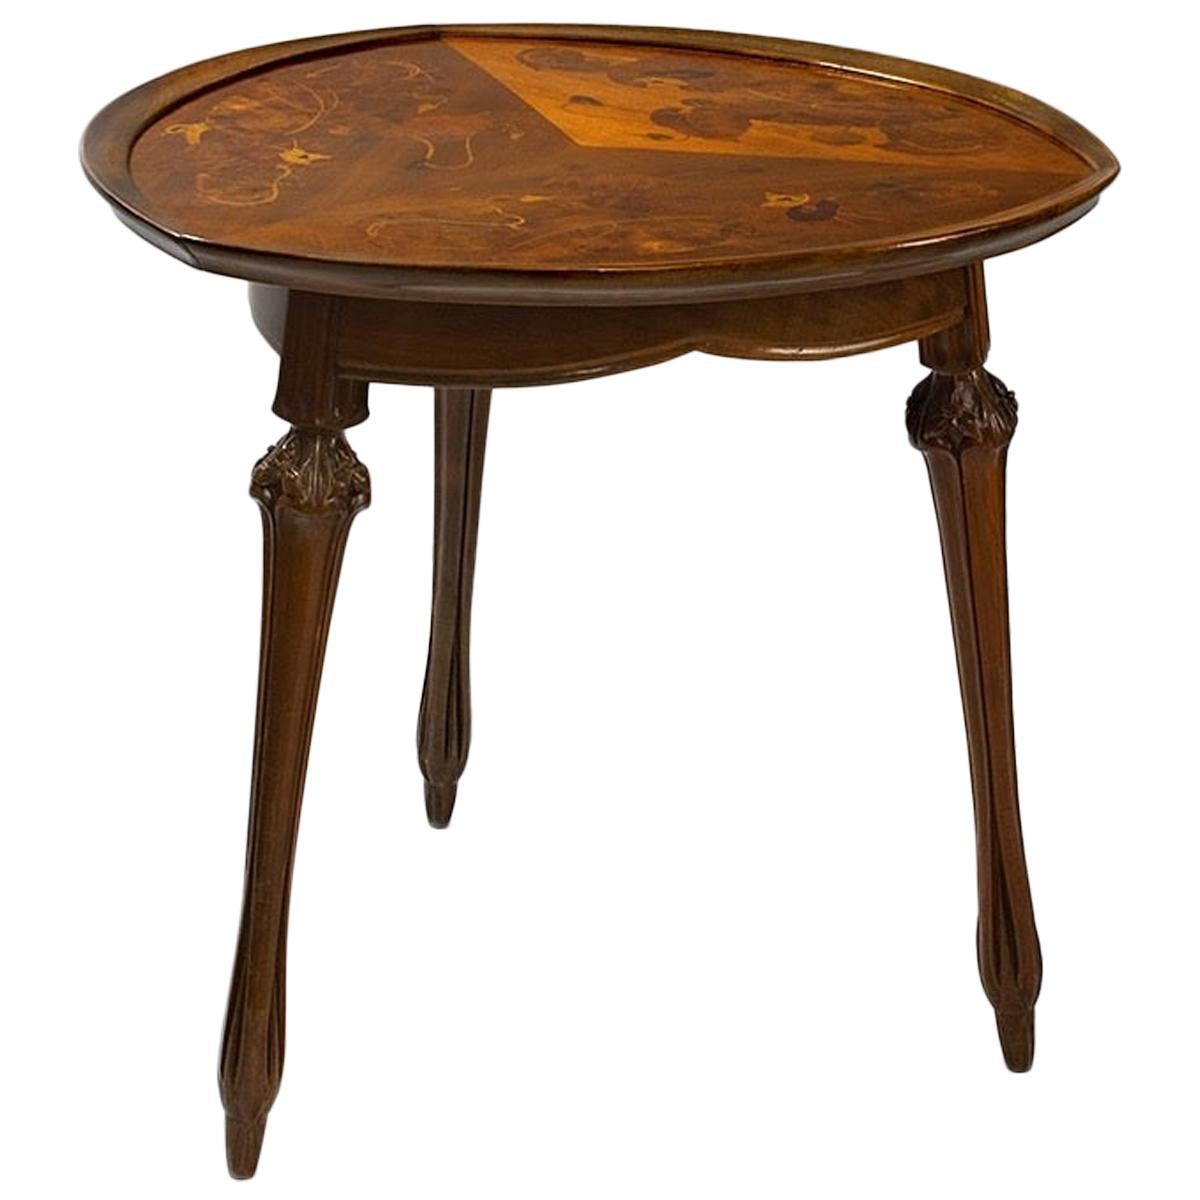 French Art Nouveau Table by Louis Majorelle For Sale